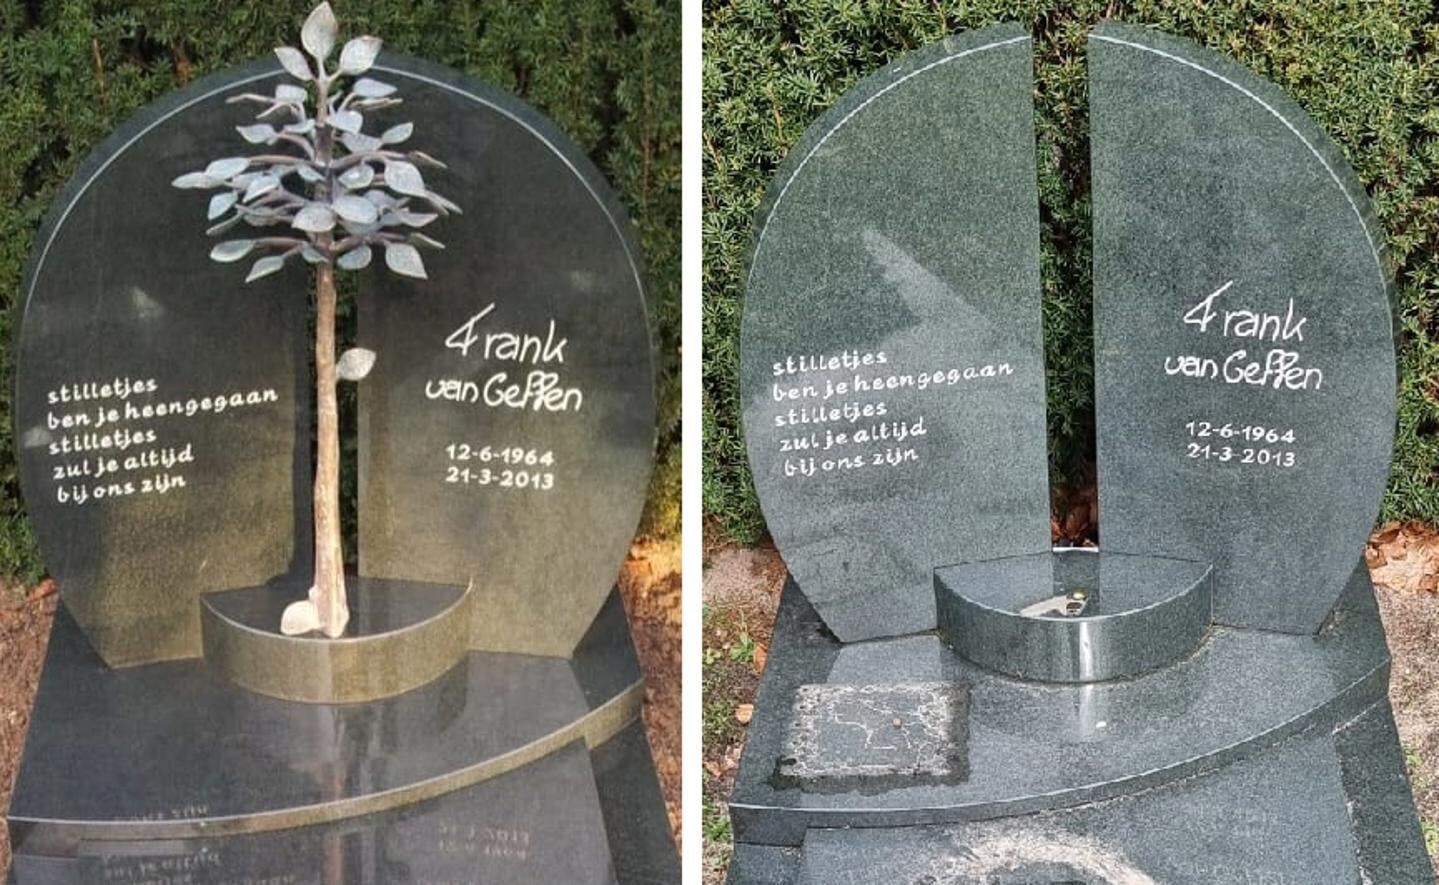 Het bronzen boompje was ter herinnering aan Frank van Geffen.